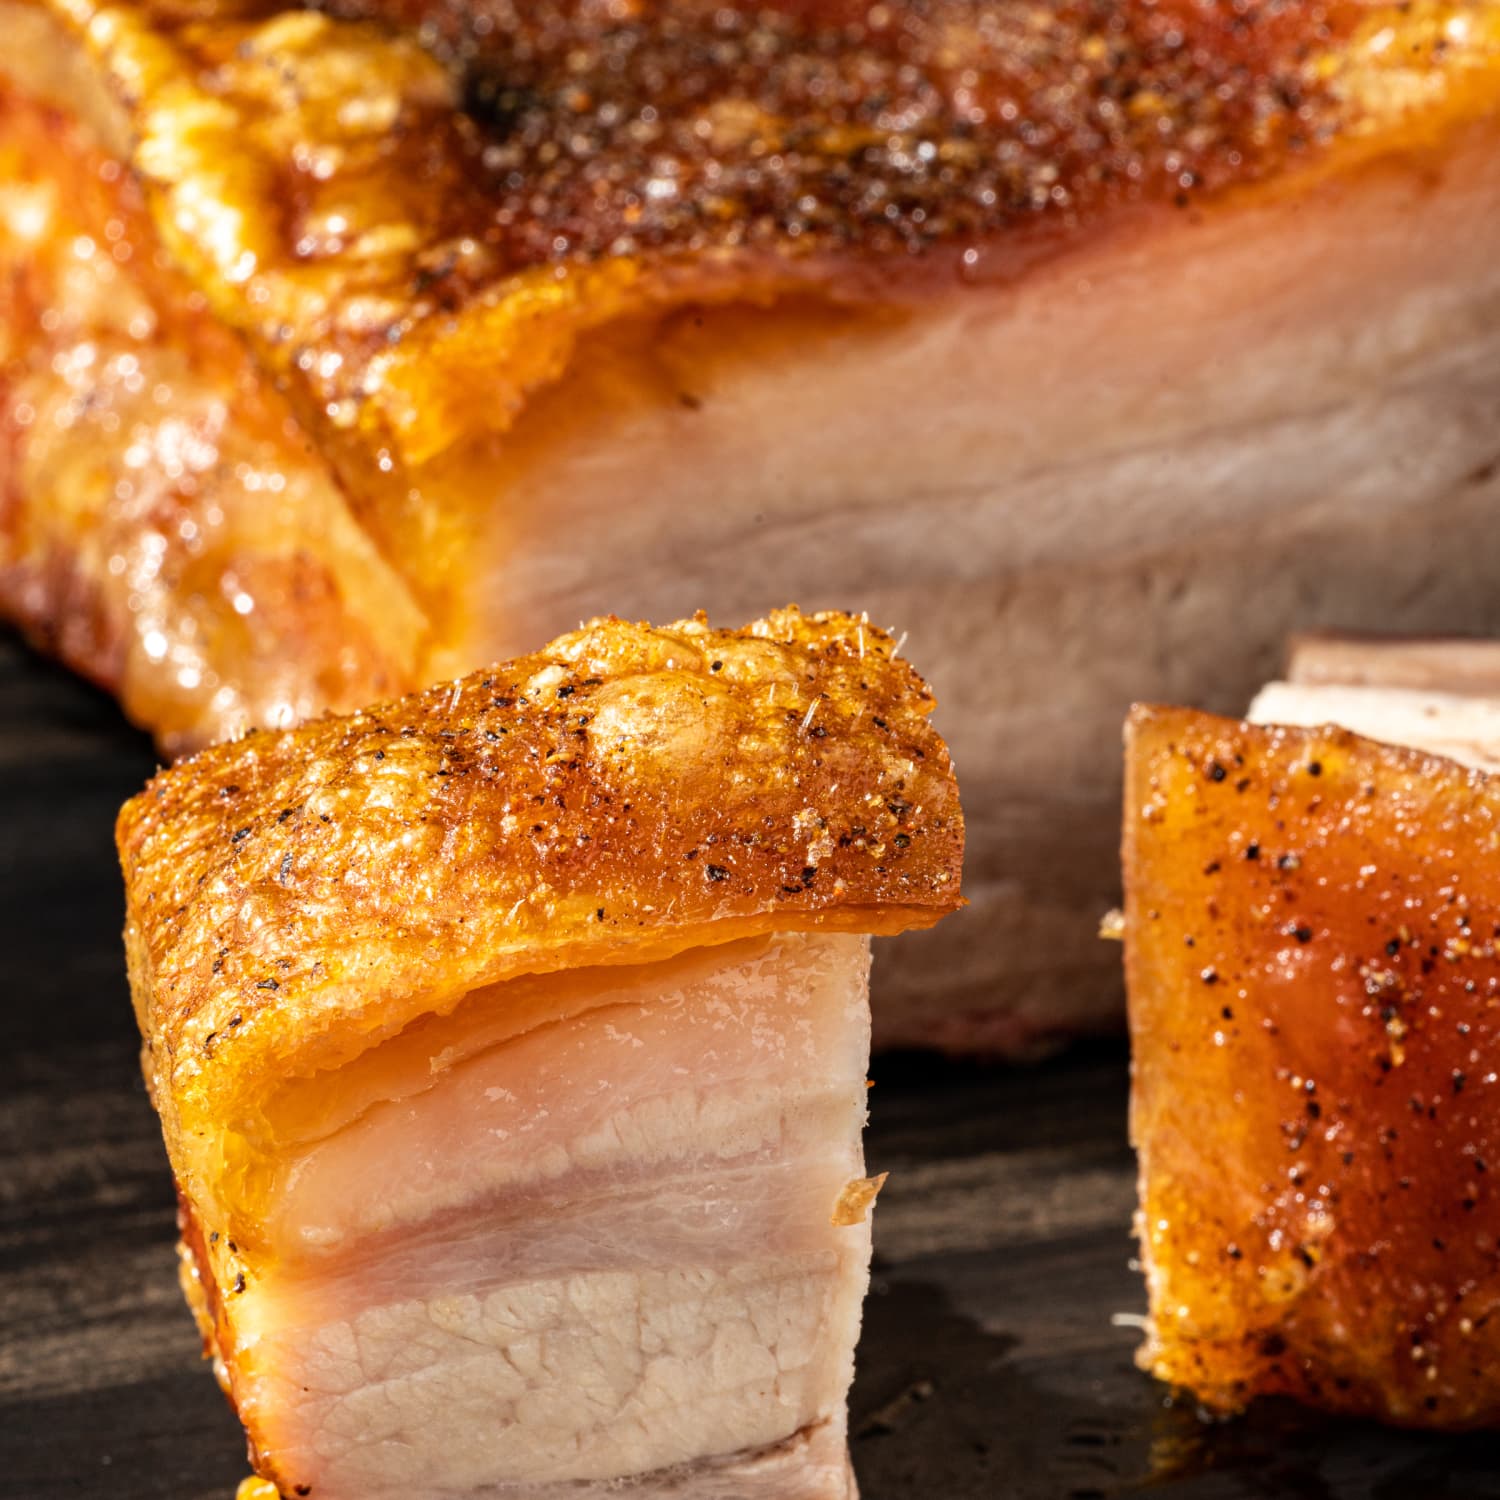 Beneficios y usos del pork belly